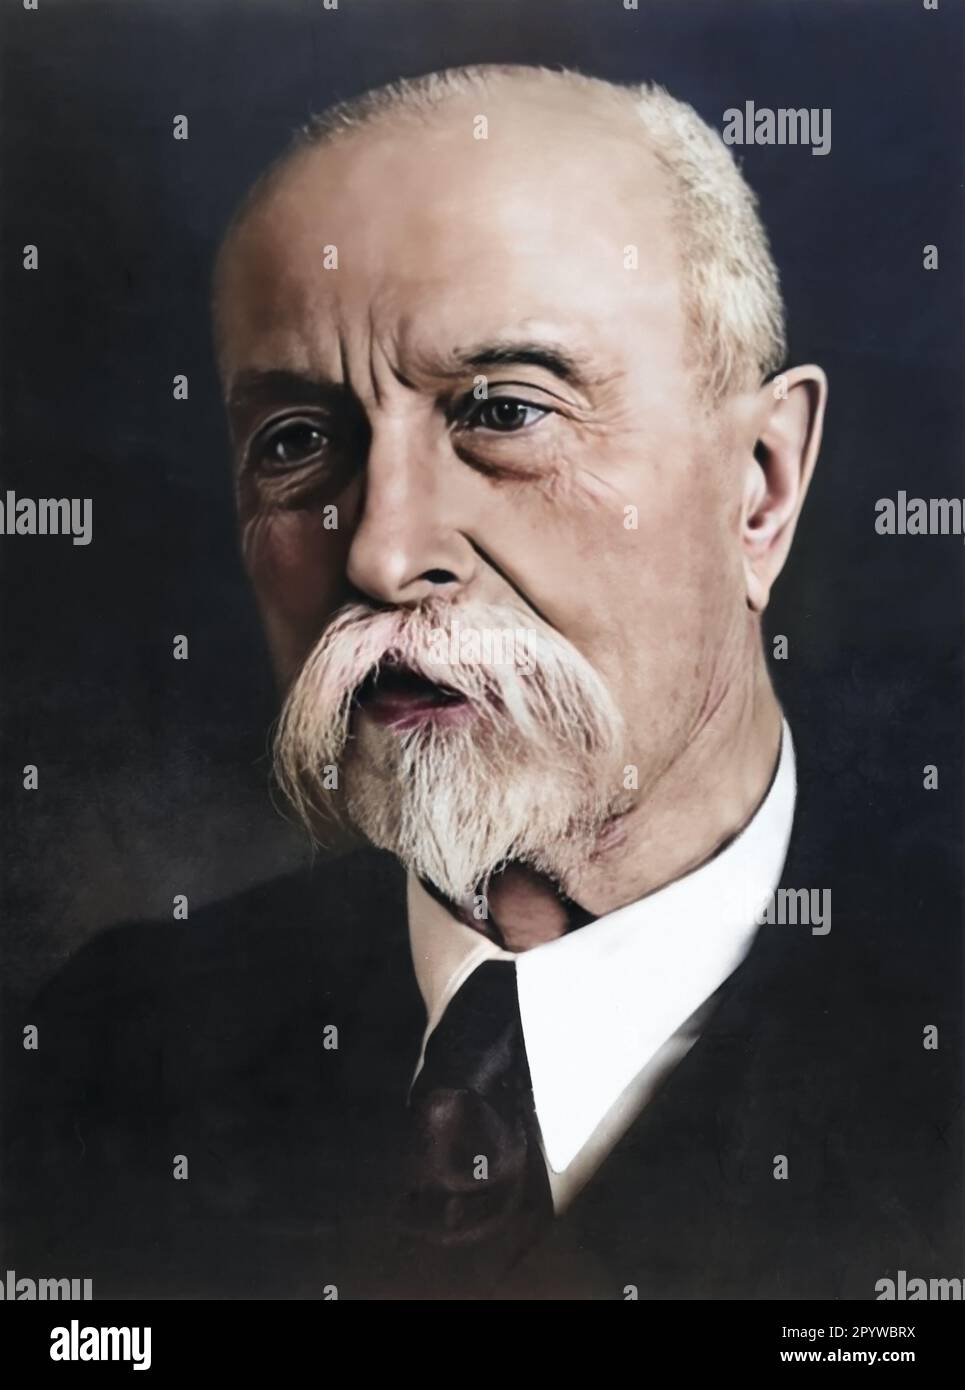 Tomas Garrigue Masaryk, portrait du diplomate et politicien tchèque, est devenu le fondateur et le premier président de la Tchécoslovaquie. Restauré numériquement et coloré Banque D'Images